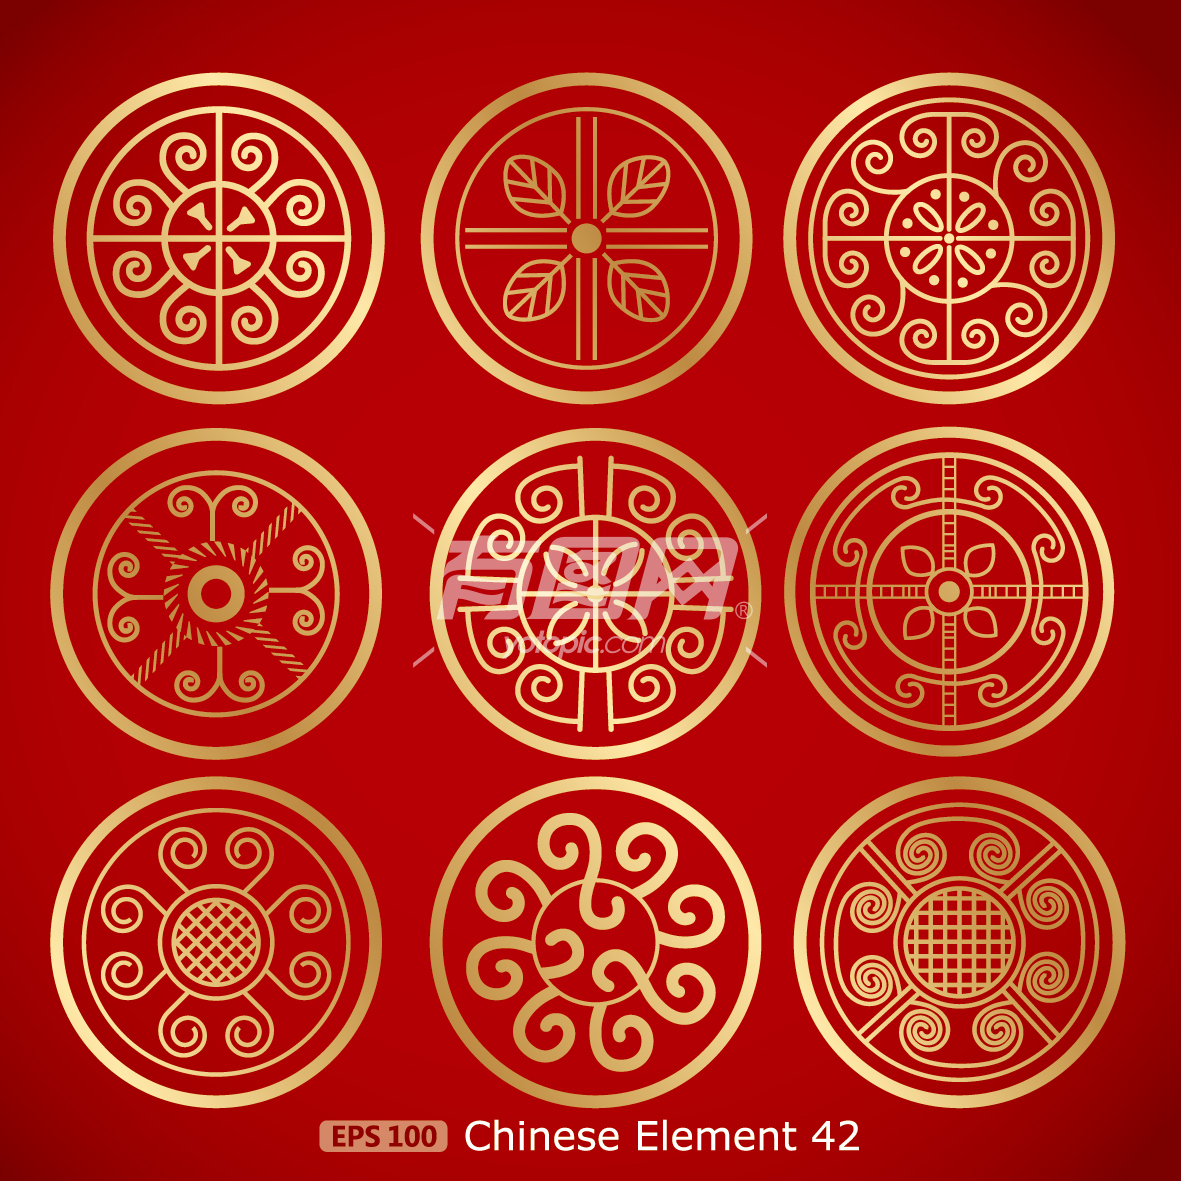 中式古典底纹印章盖印